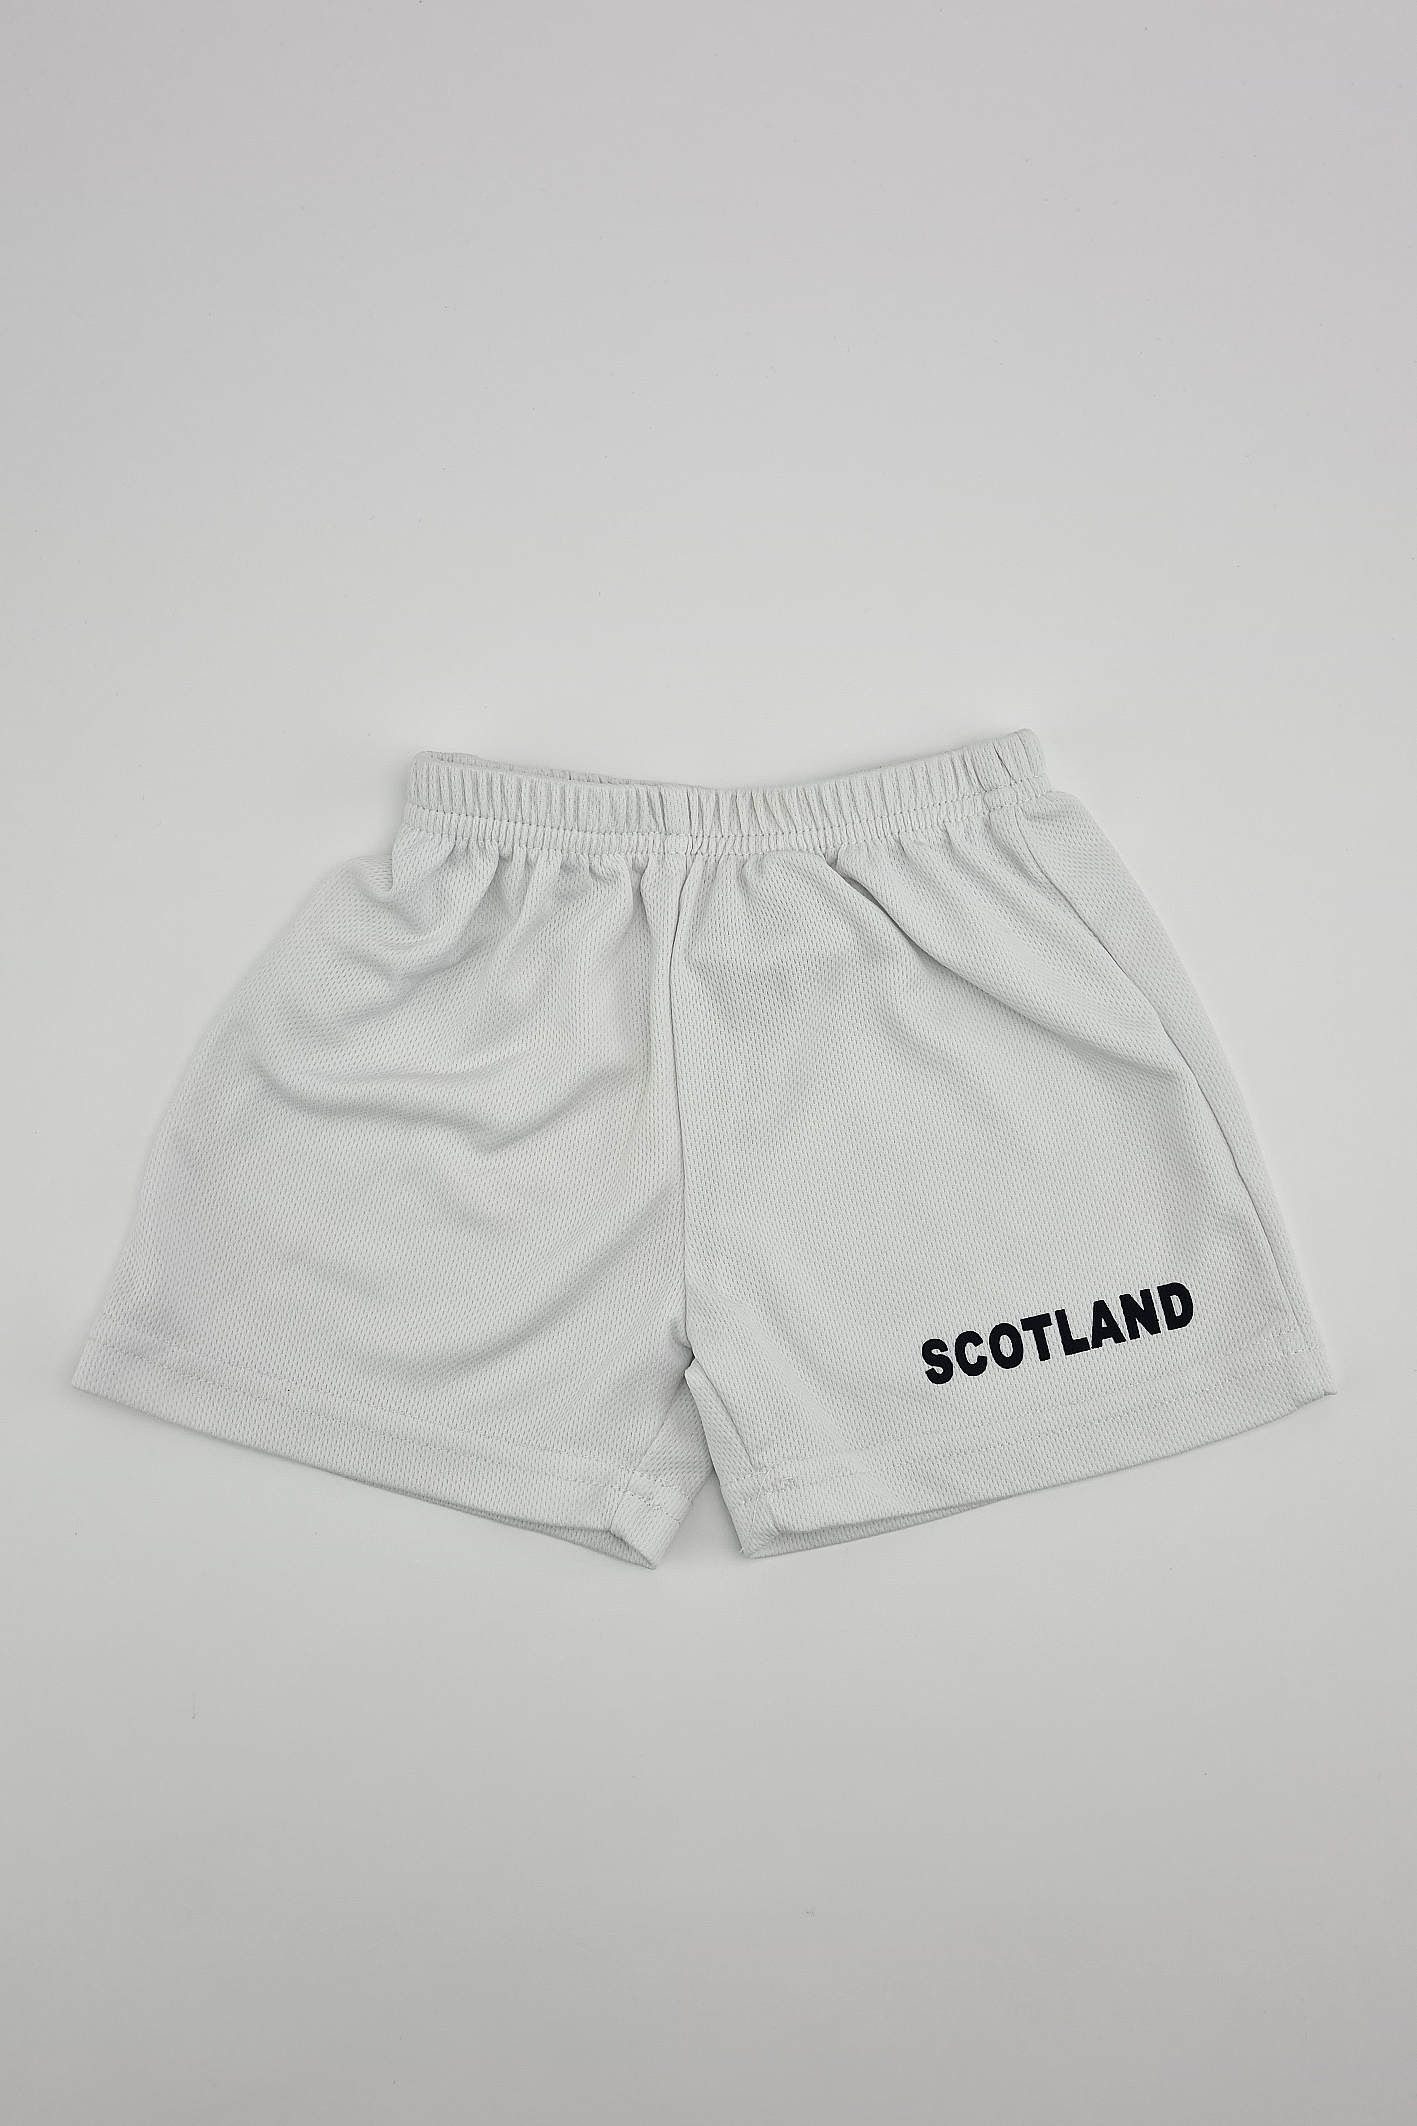 'Scotland' Shorts - Precuddled.com